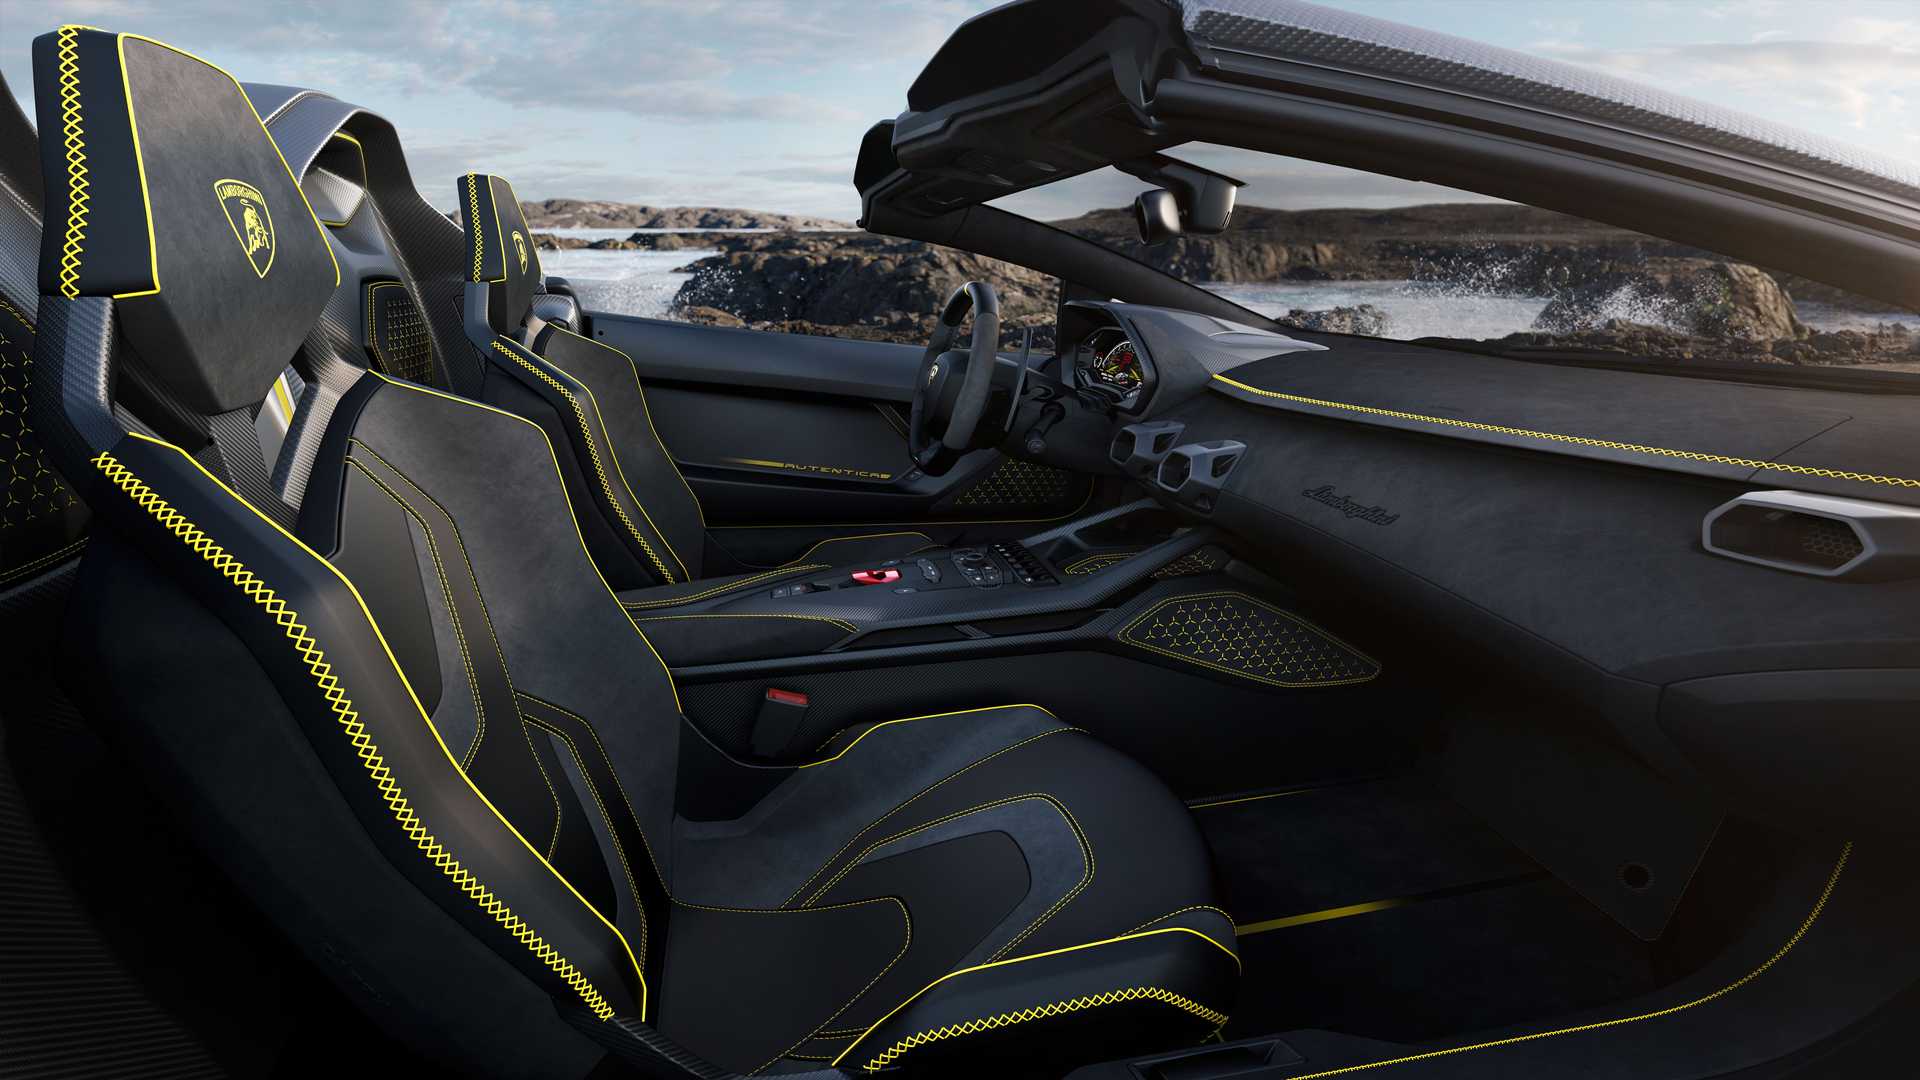 Lamborghini ra mắt bộ đôi siêu xe V12 chạy xăng cuối cùng, sau đây sẽ toàn siêu xe điện êm ru chưa biết nẹt pô kiểu gì - Ảnh 18.